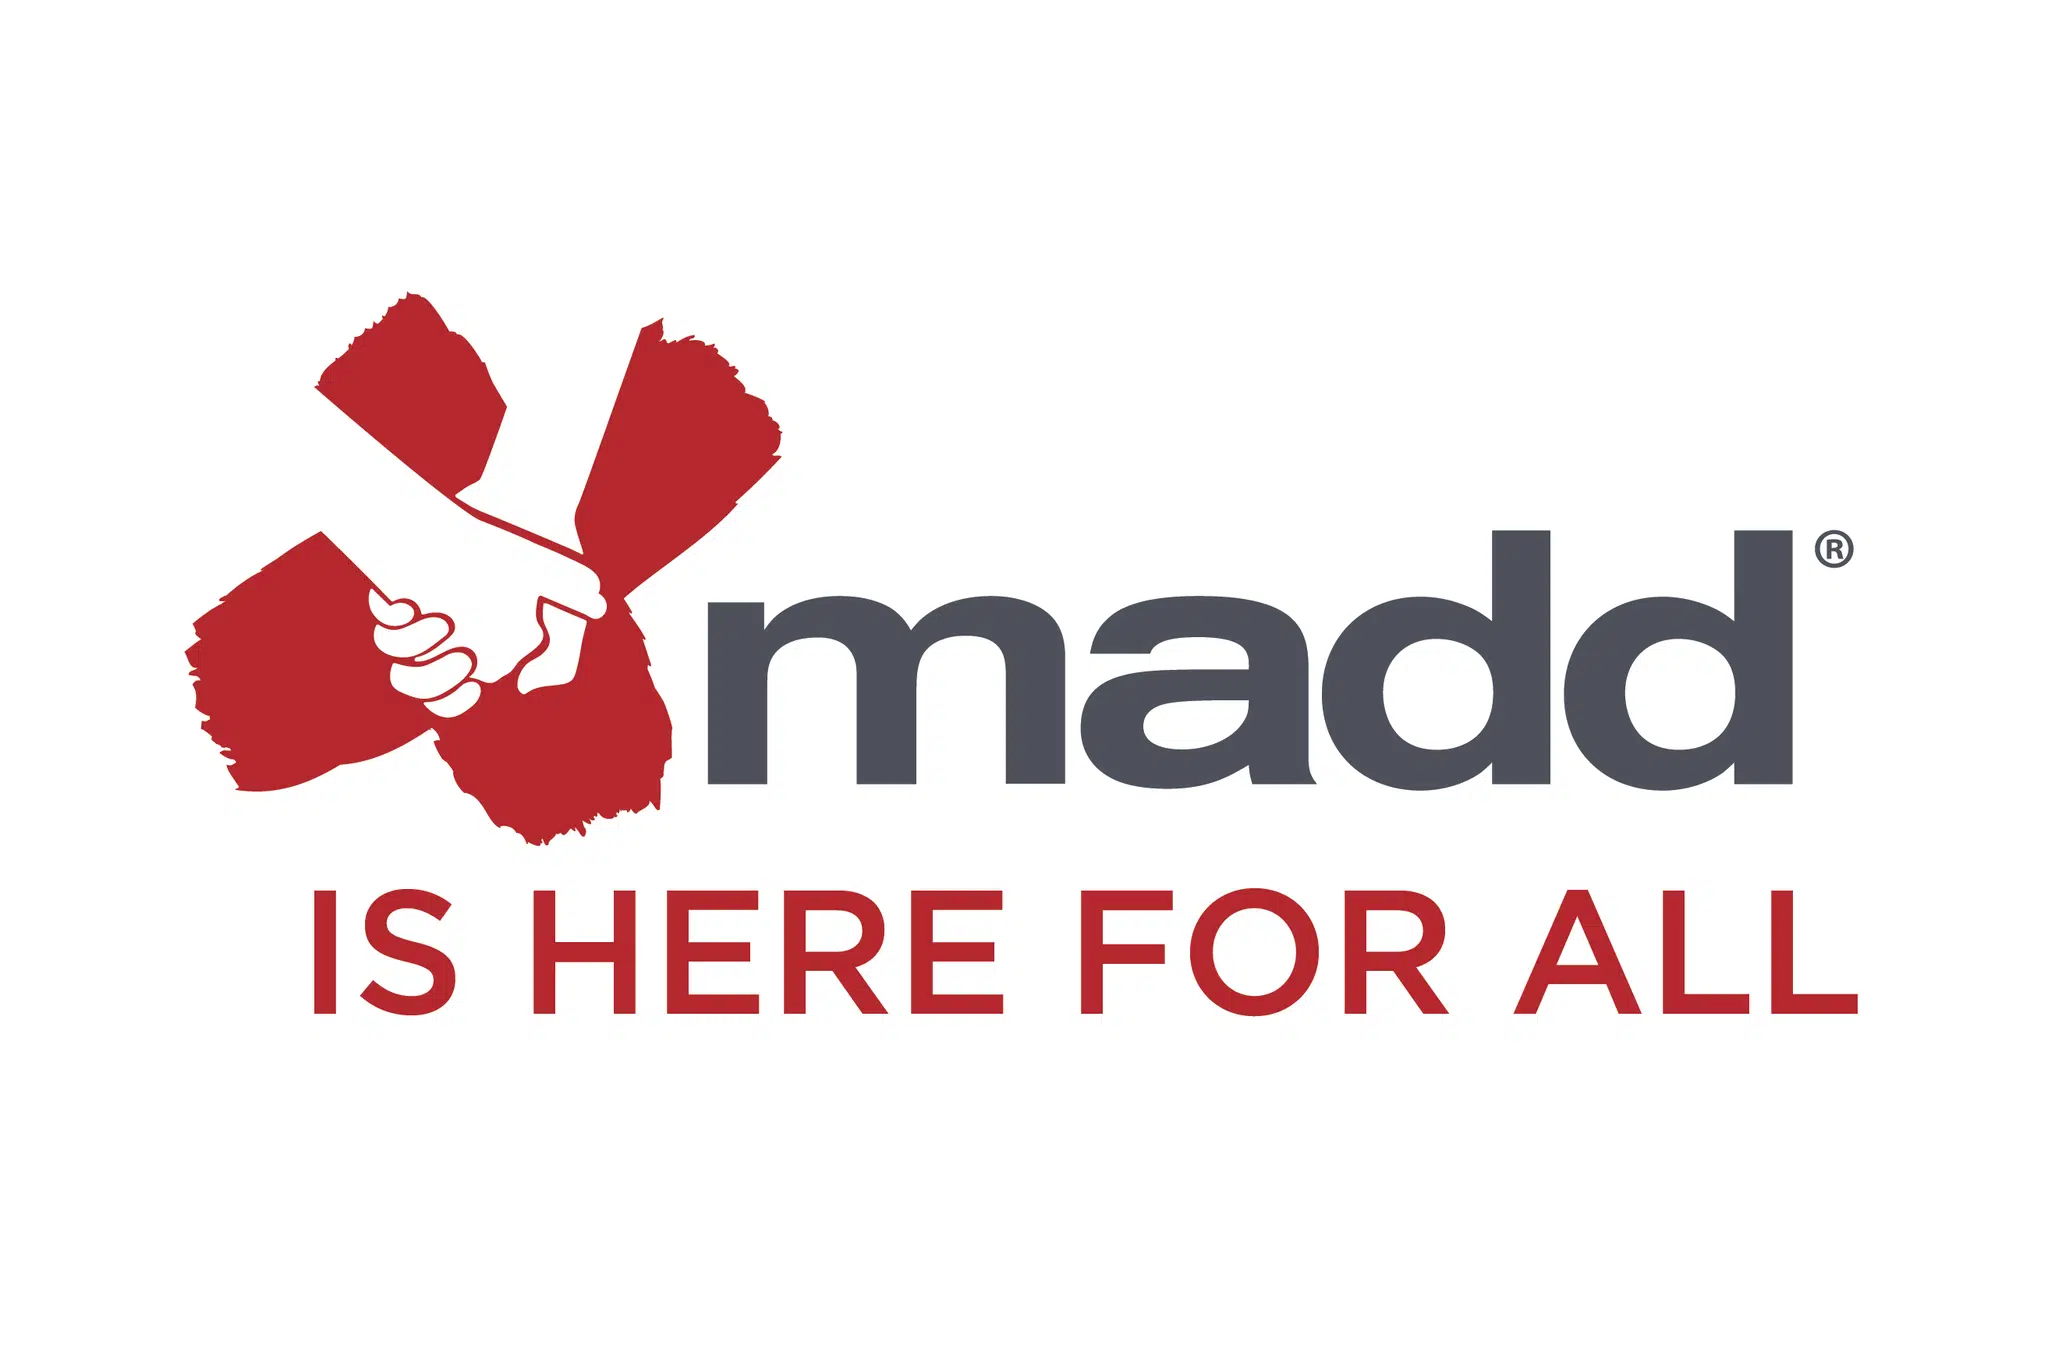 MADD wants  no more victims